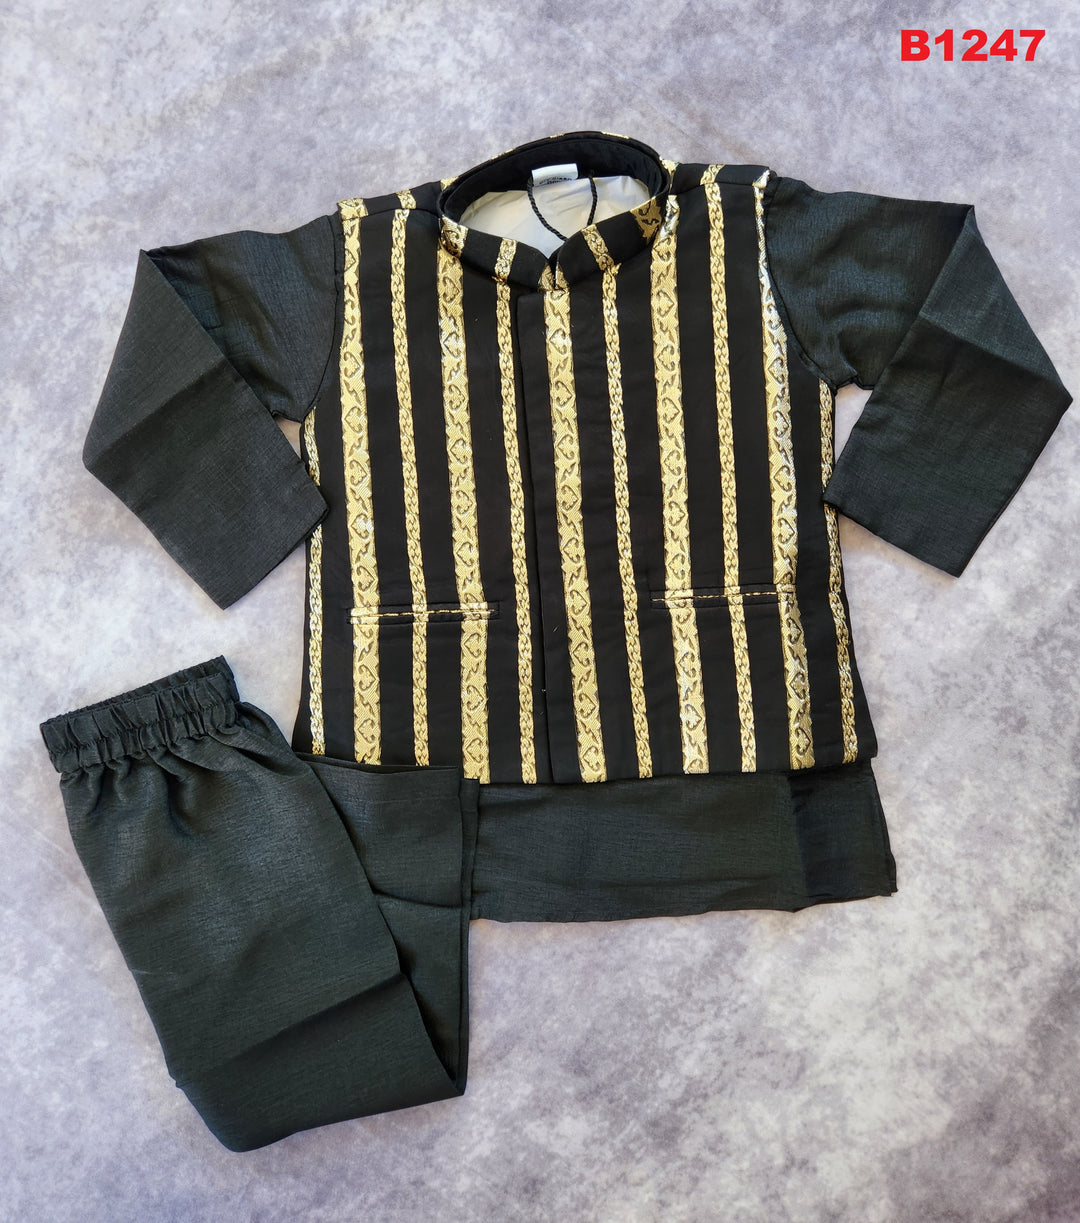 B1247 - Black Kurta set with zari striped waistcoat set